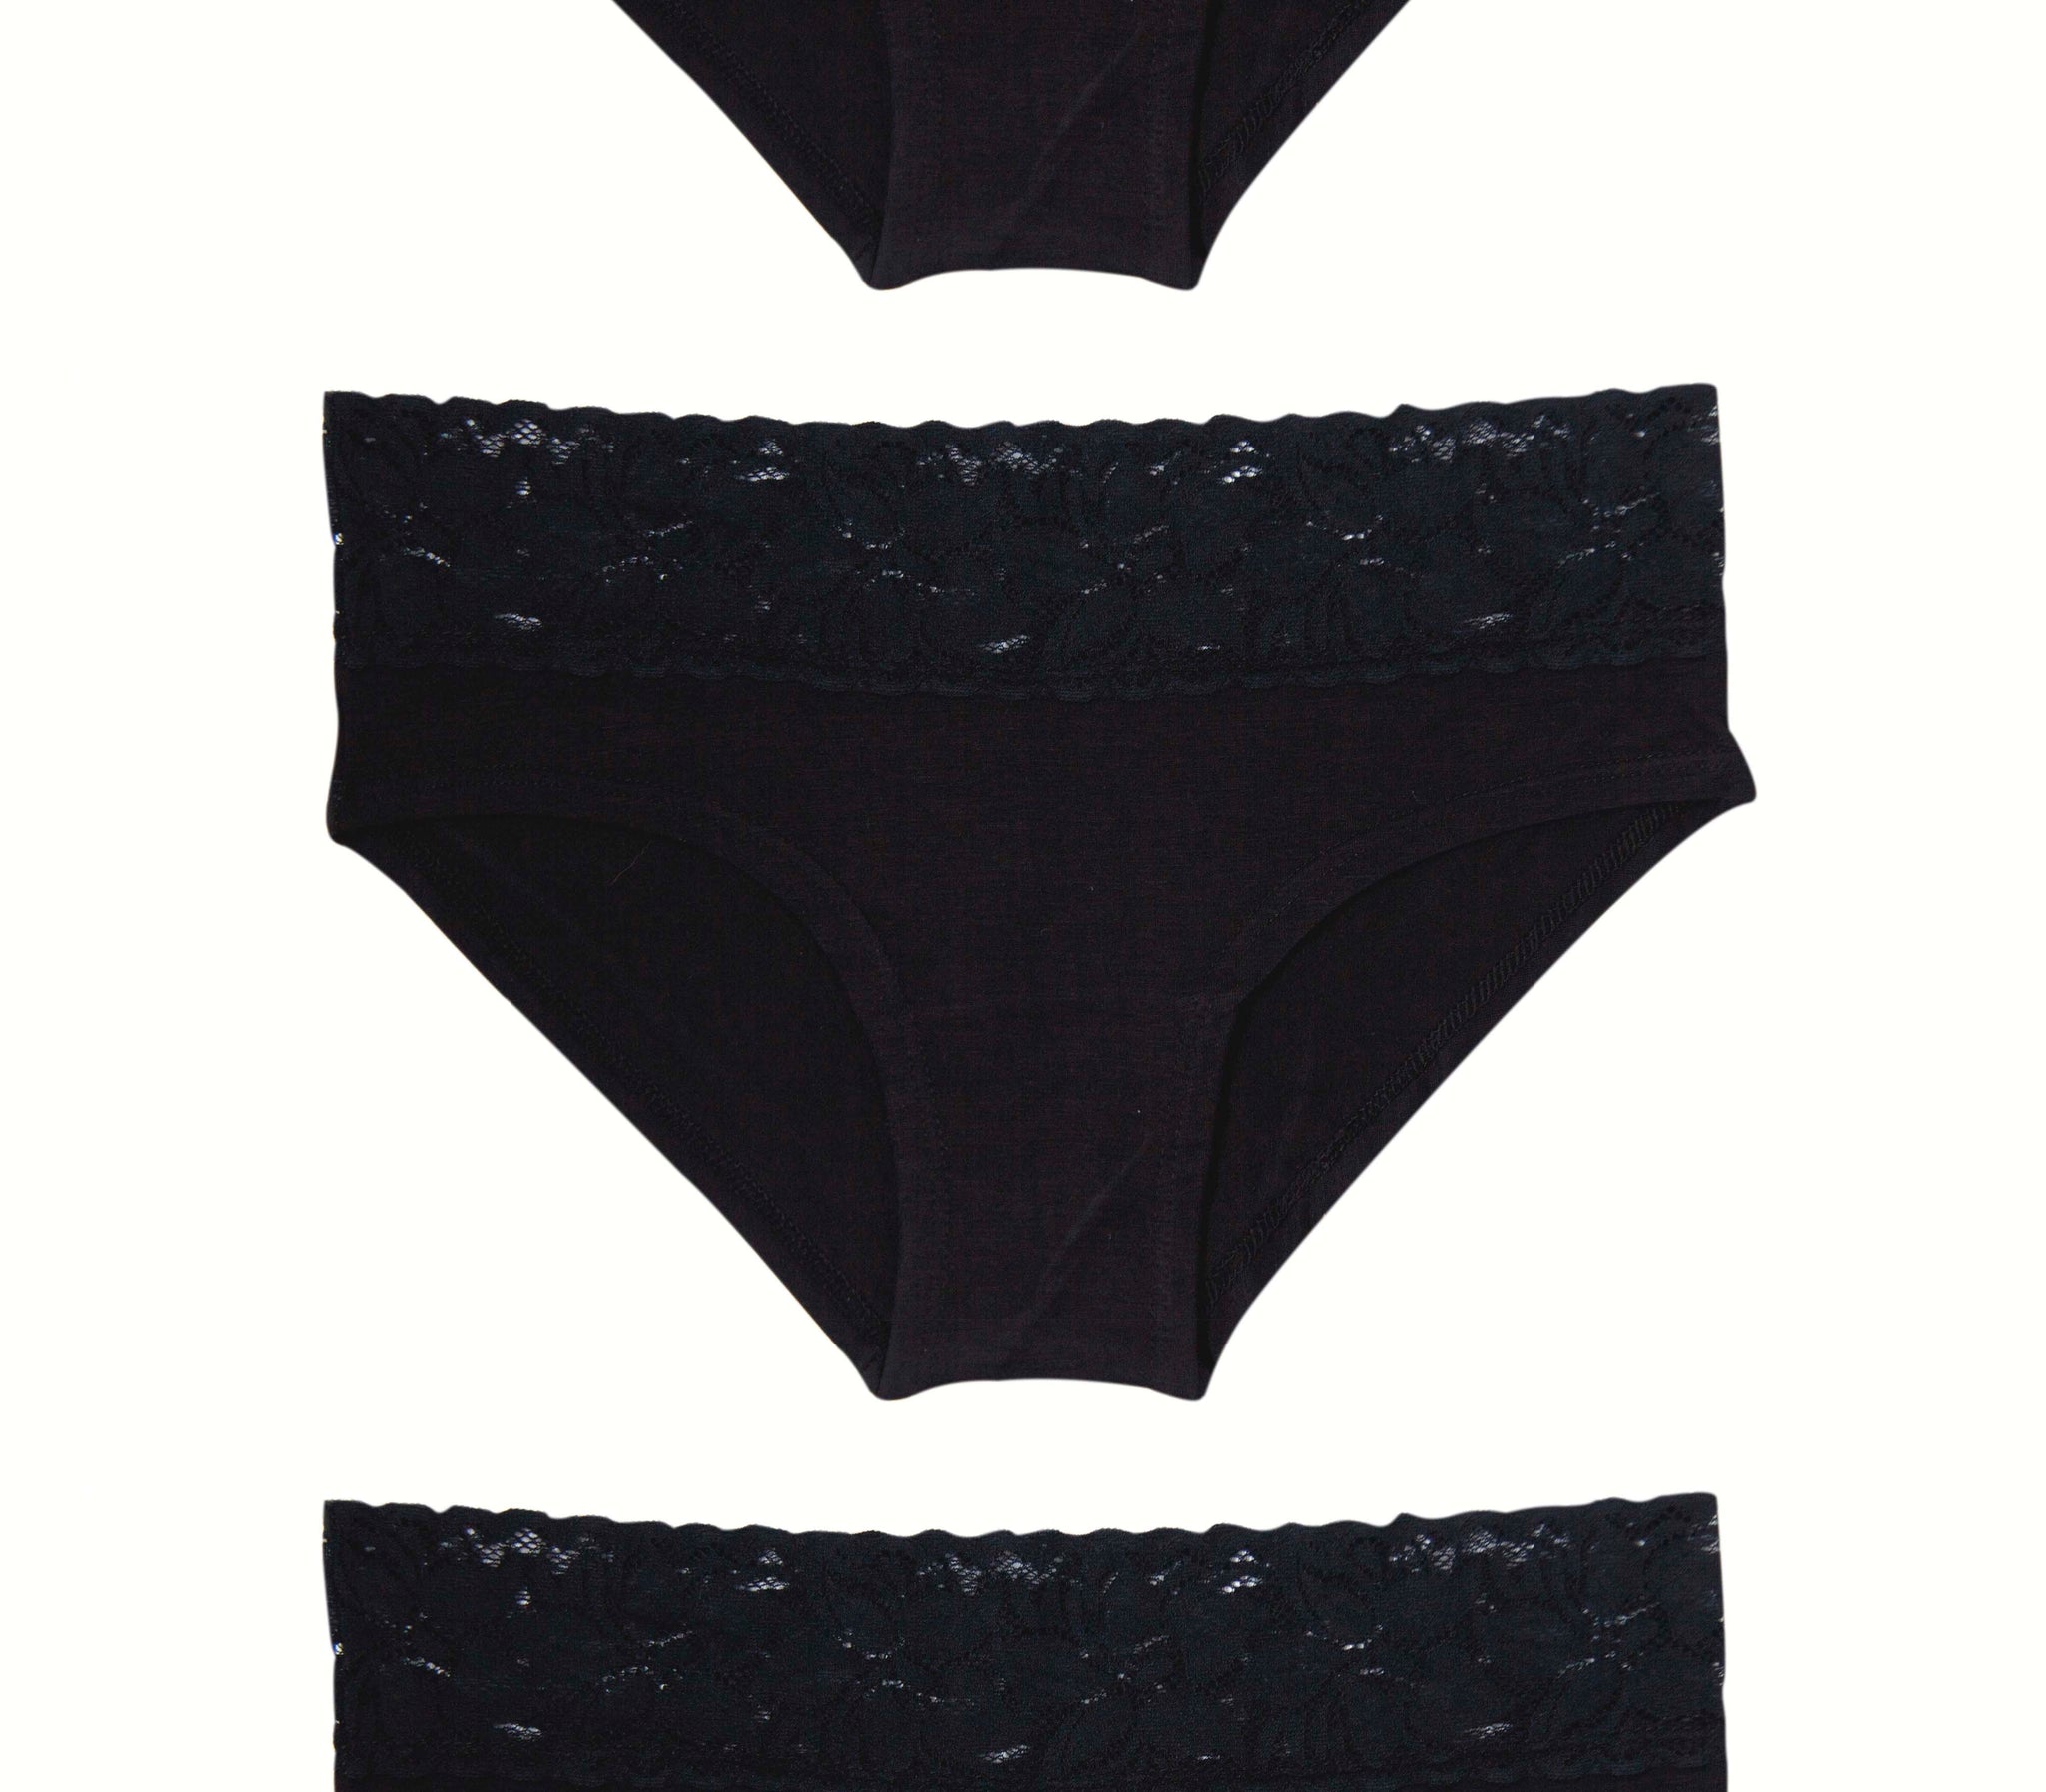 LITTLE BLACK PANTY  Buy Ladies Underwear & Panties for Women Online In  India 